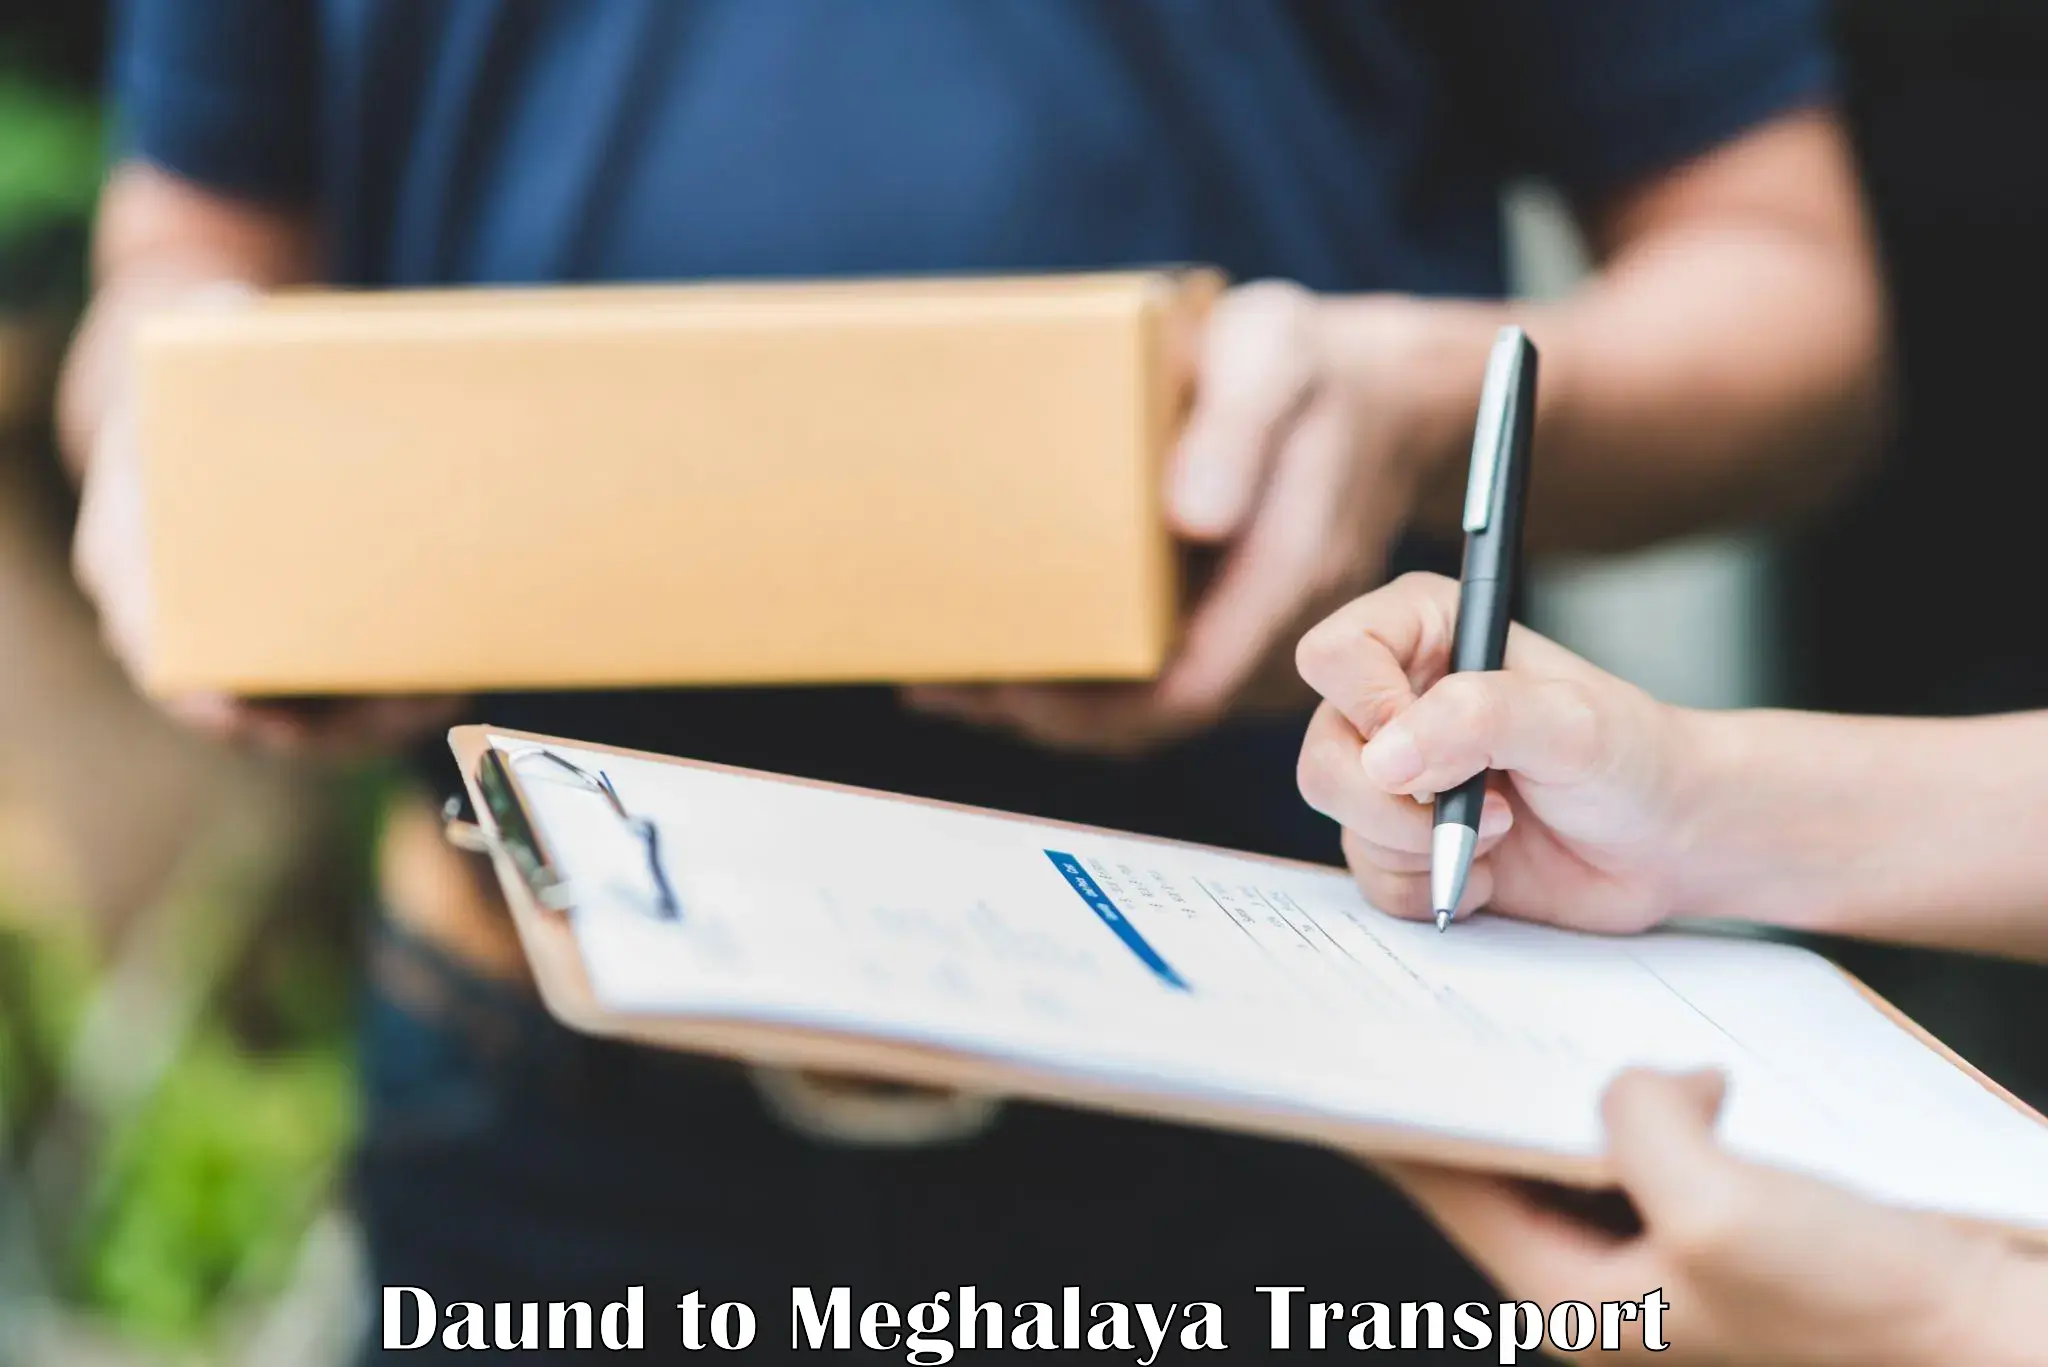 Shipping services Daund to Meghalaya